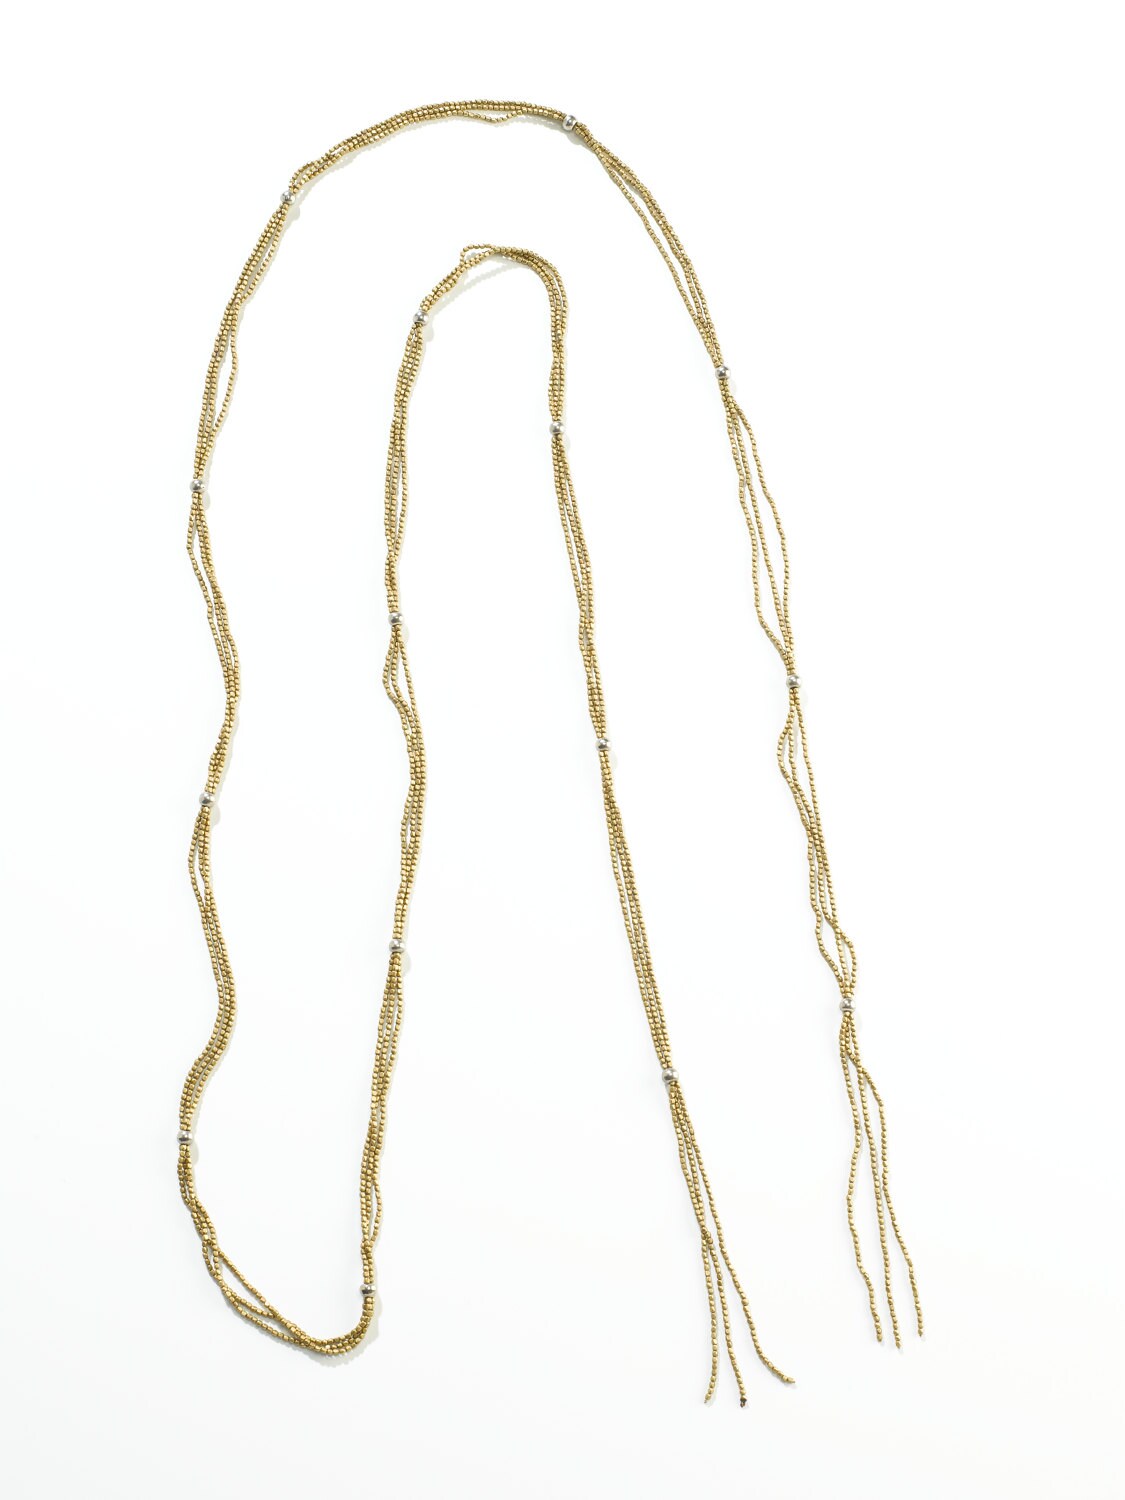 Extra Long Boho Necklace Double Wrap Long Necklace Long | Etsy